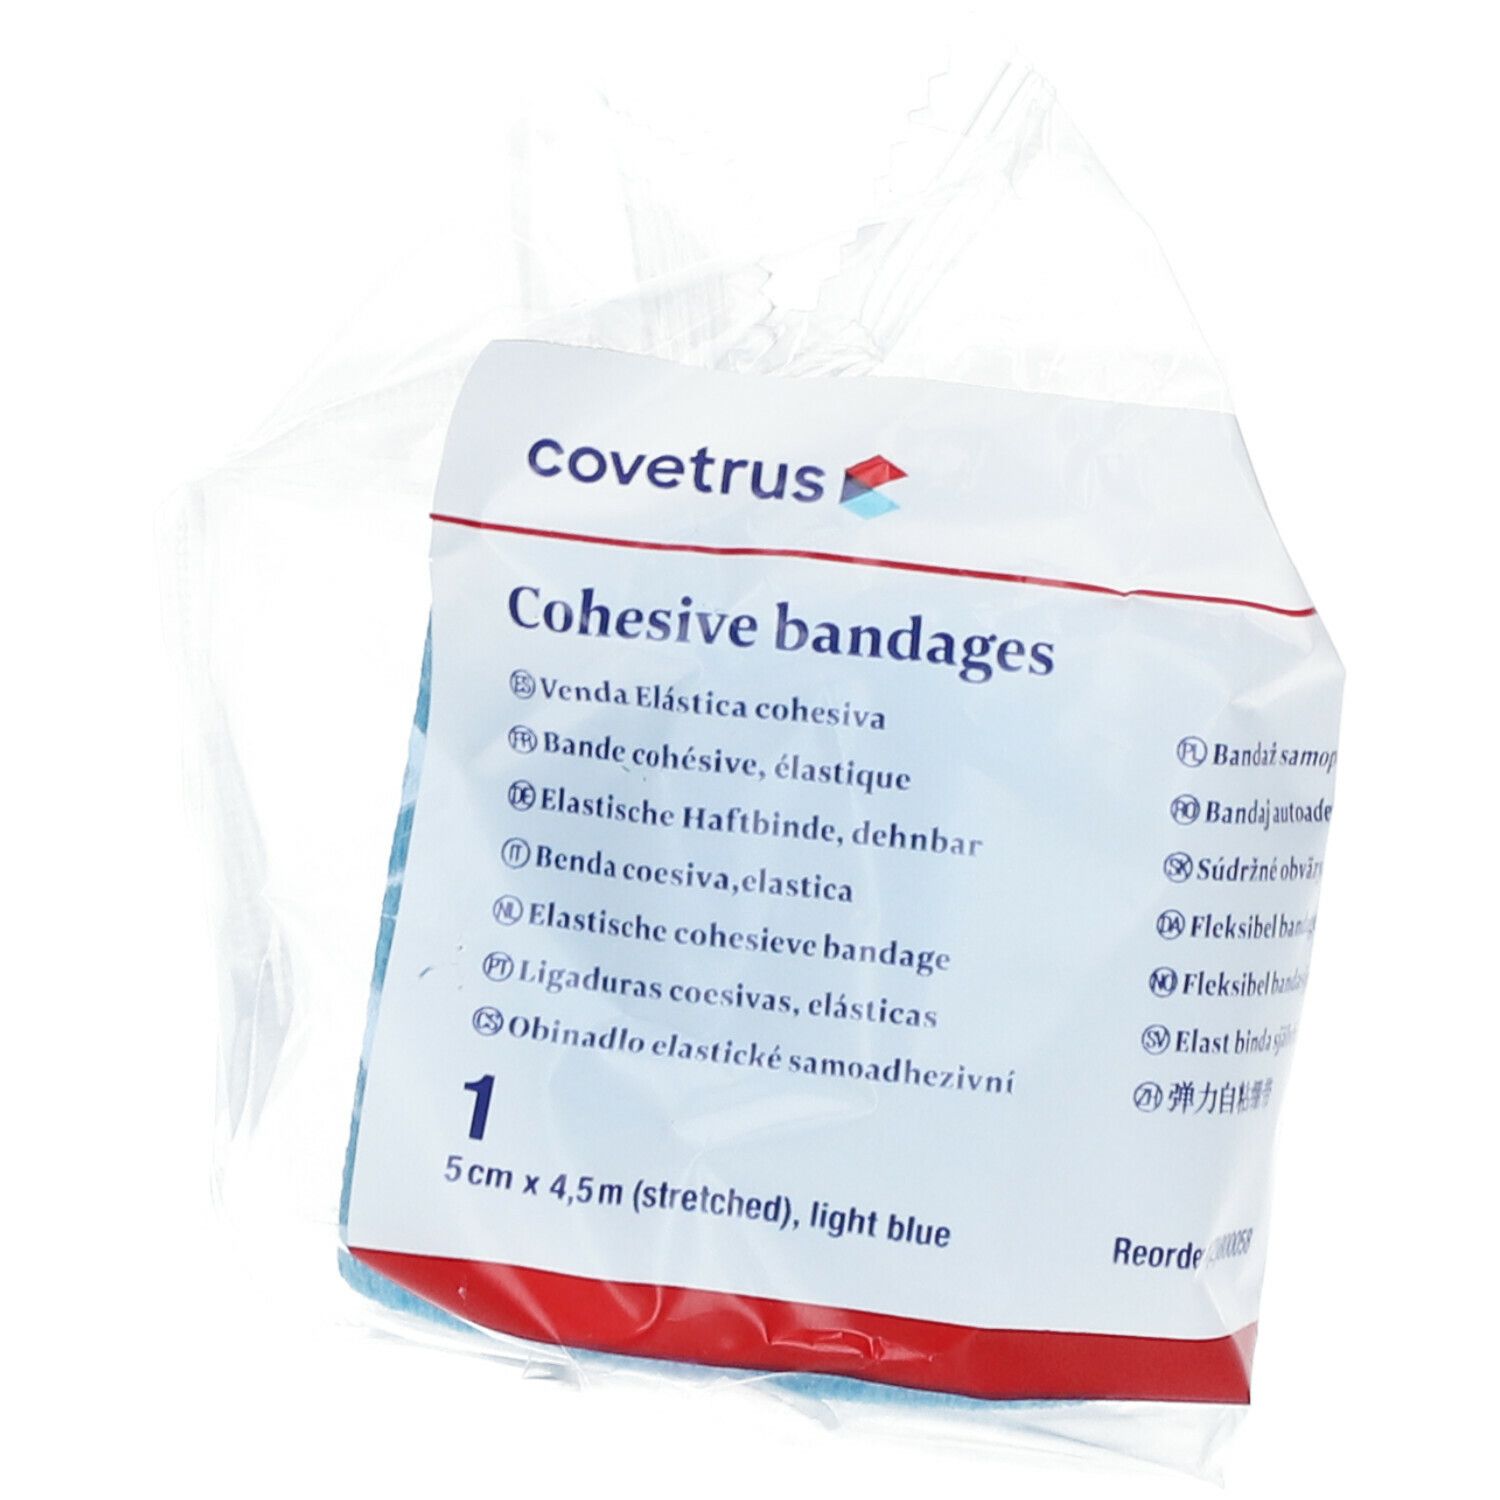 covetrus Cohesive bandages 5cm x 4,5m